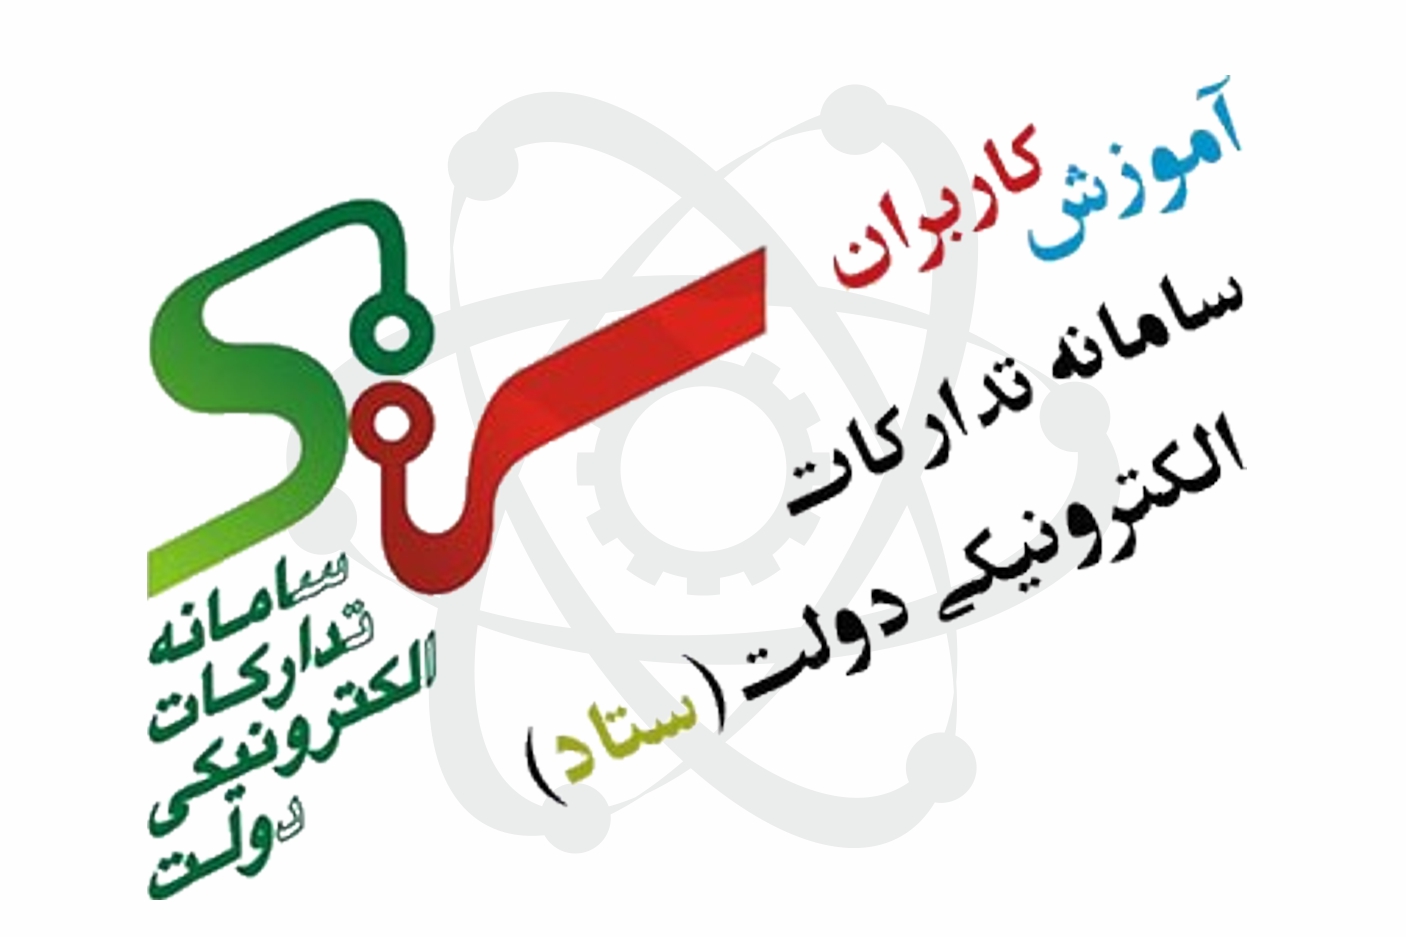 پارک علم و فناوری استان مرکزی - پارک علم و فناوری استان مرکزی